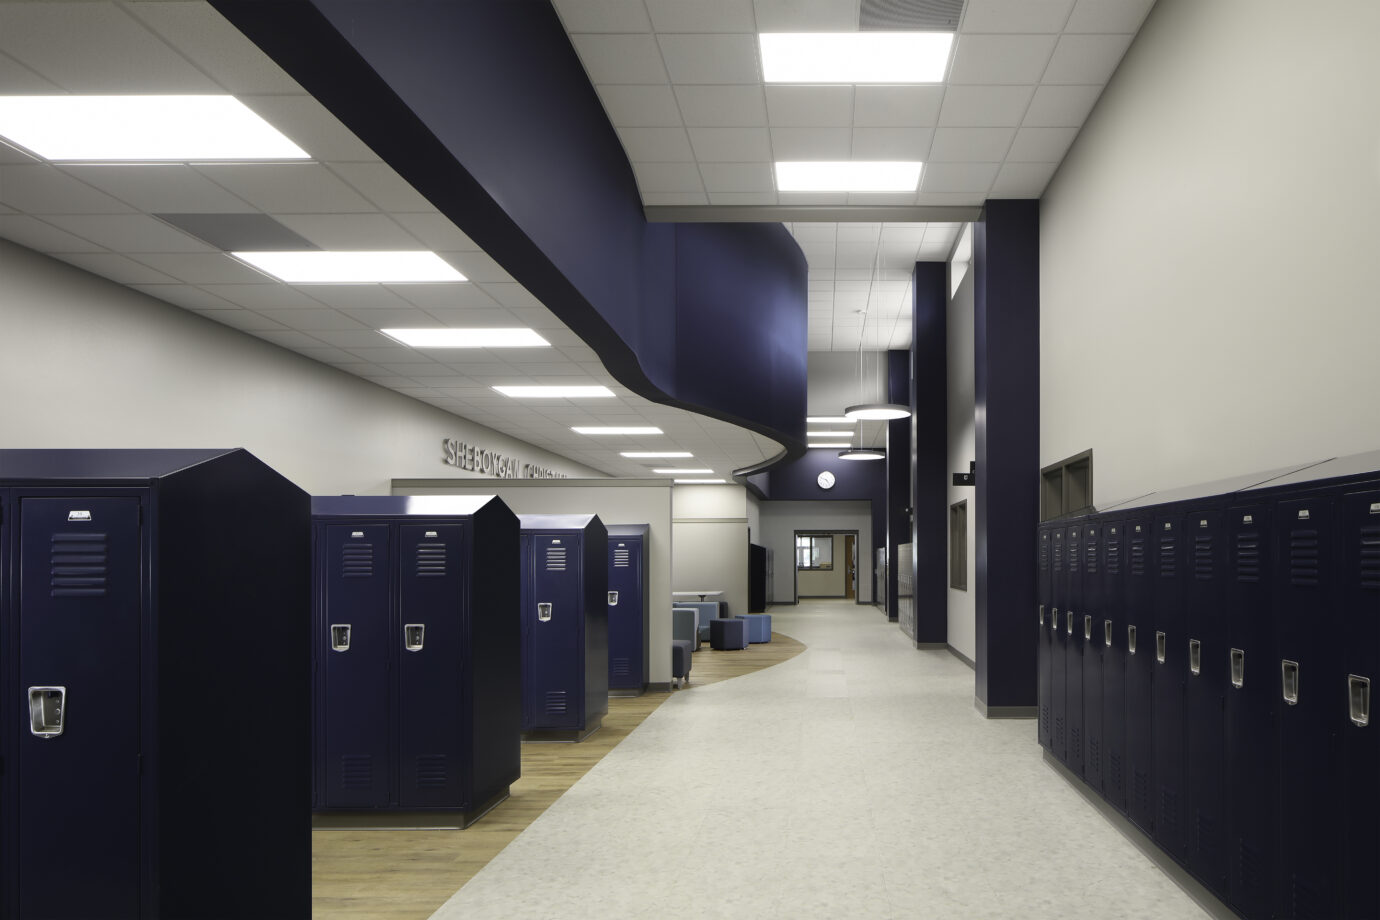 LVT in School Corridor with Lockers